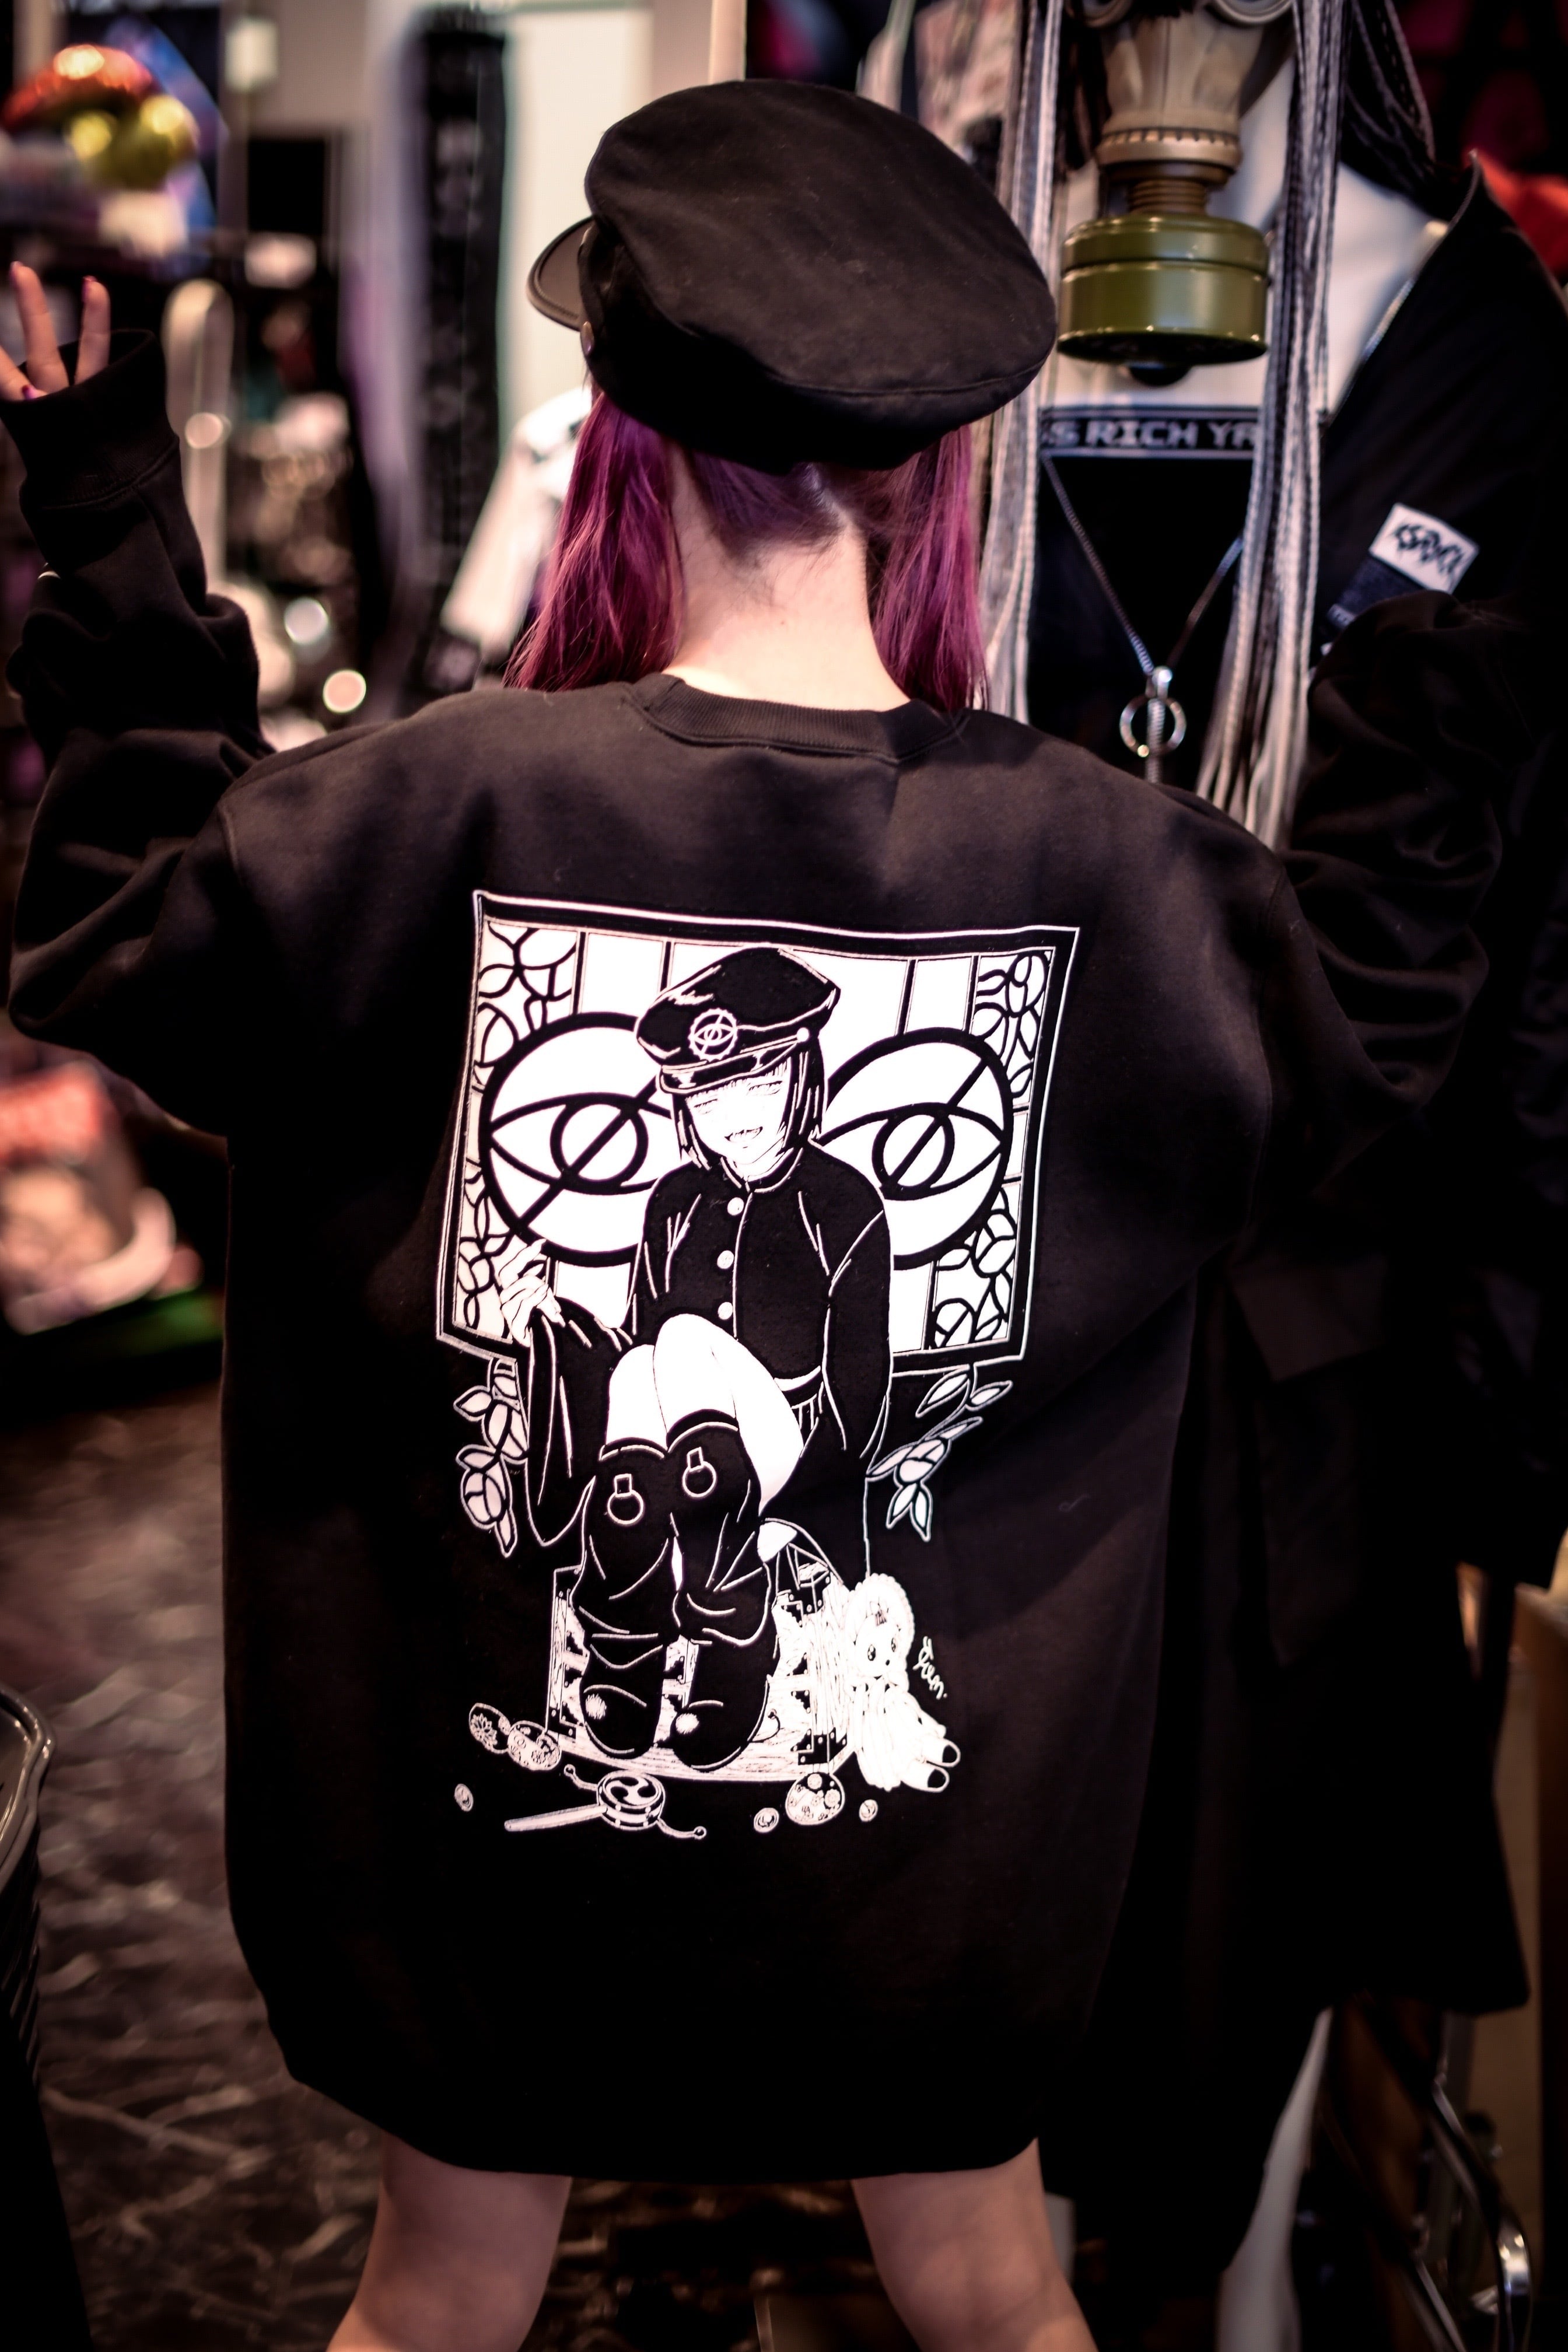 「石榴×KRYスウェット」 | KRY clothing powered by BASE